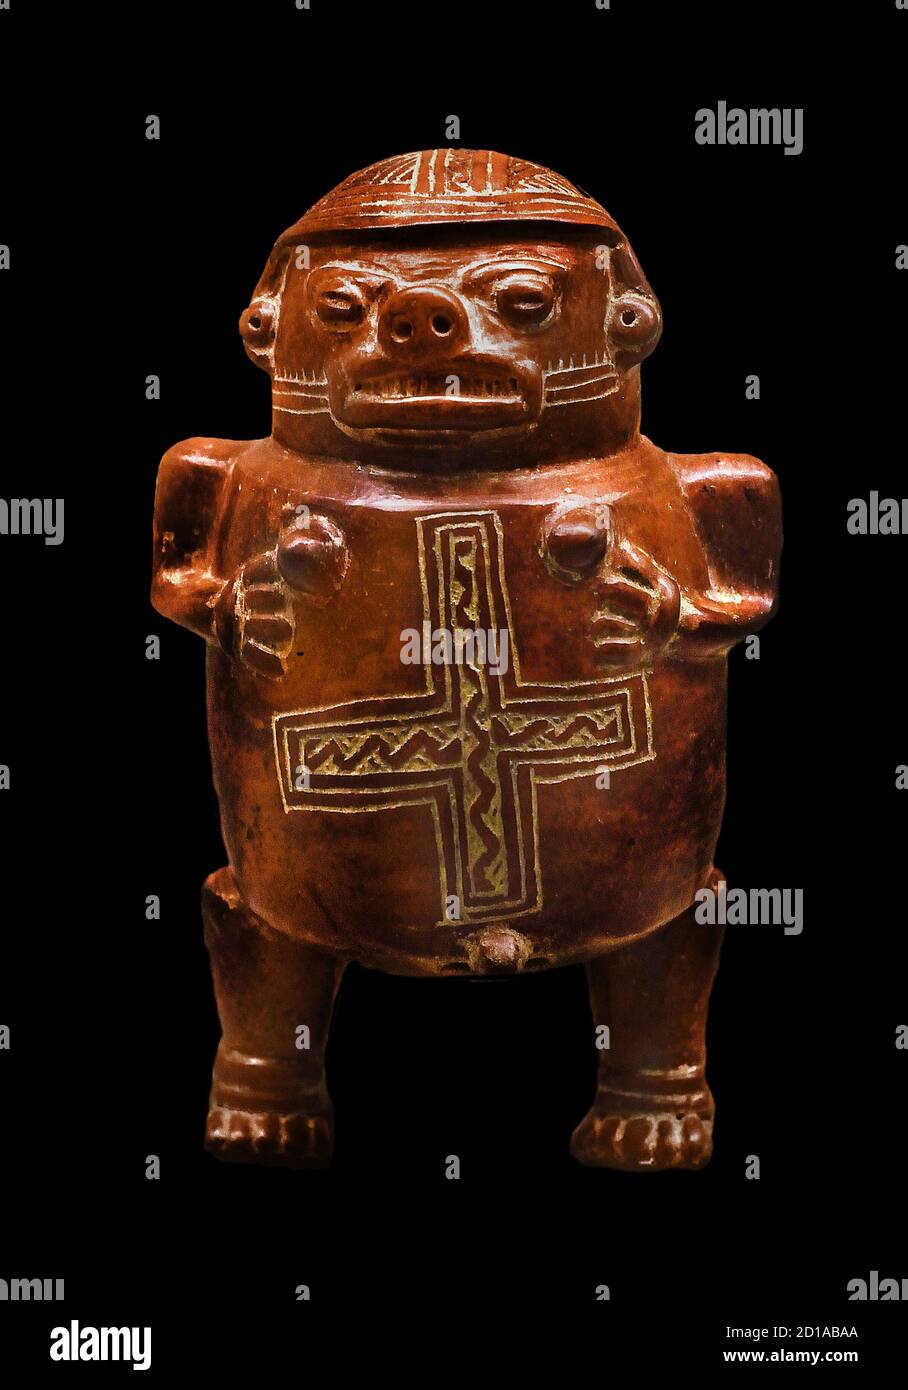 Periode VI Nicoya 1000 - 1200 n. Chr. Costa Rica hermaphroditisch gottheit Ōmeteōtl (Ōmeteōtl beziehen sich auf das Paar der aztekischen Gottheiten Ometecuhtli und Omecihuatl) Stockfoto